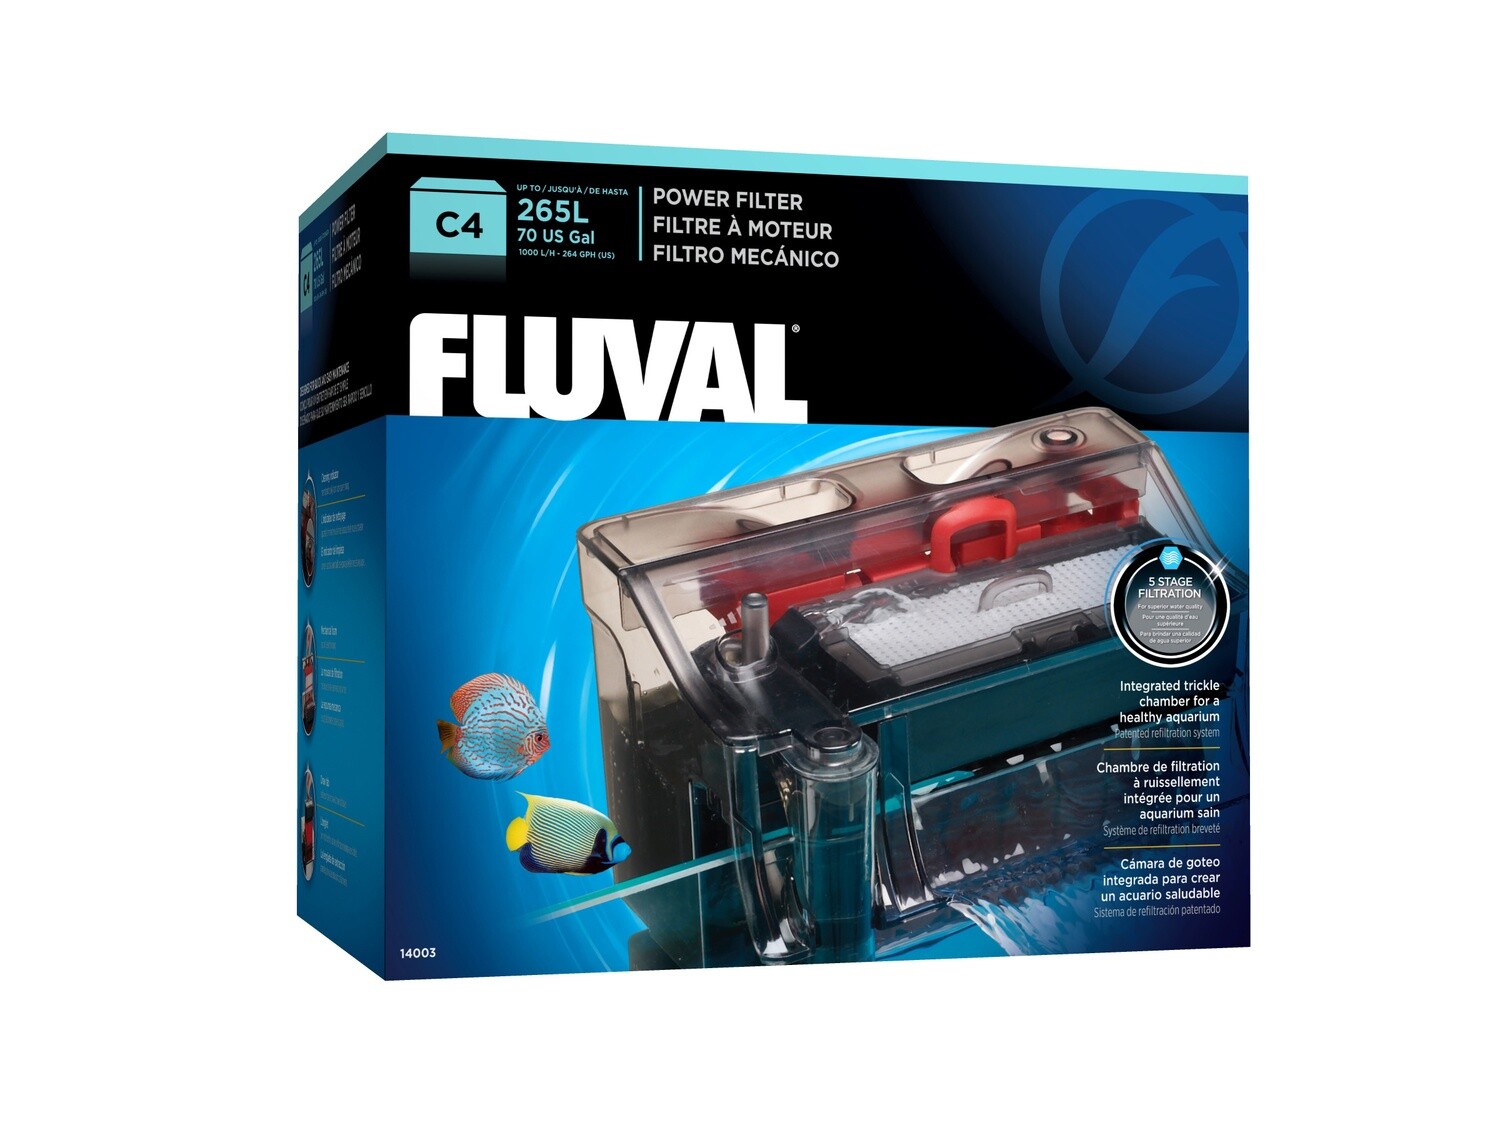 Fluval C4 Power Filter